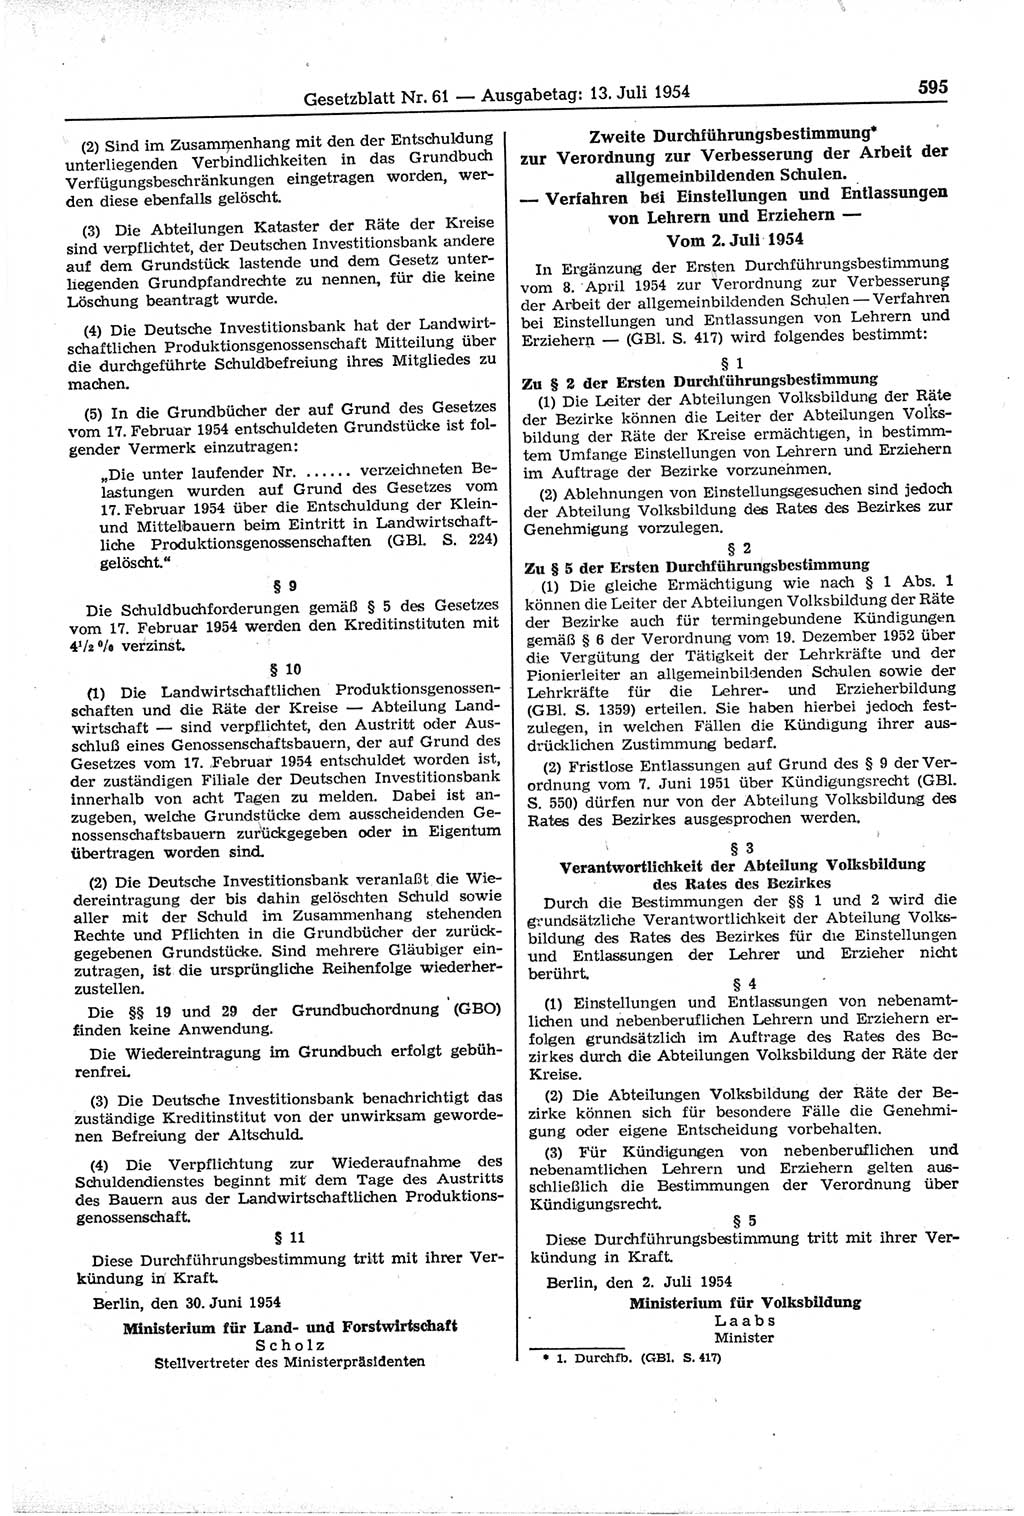 Gesetzblatt (GBl.) der Deutschen Demokratischen Republik (DDR) 1954, Seite 595 (GBl. DDR 1954, S. 595)